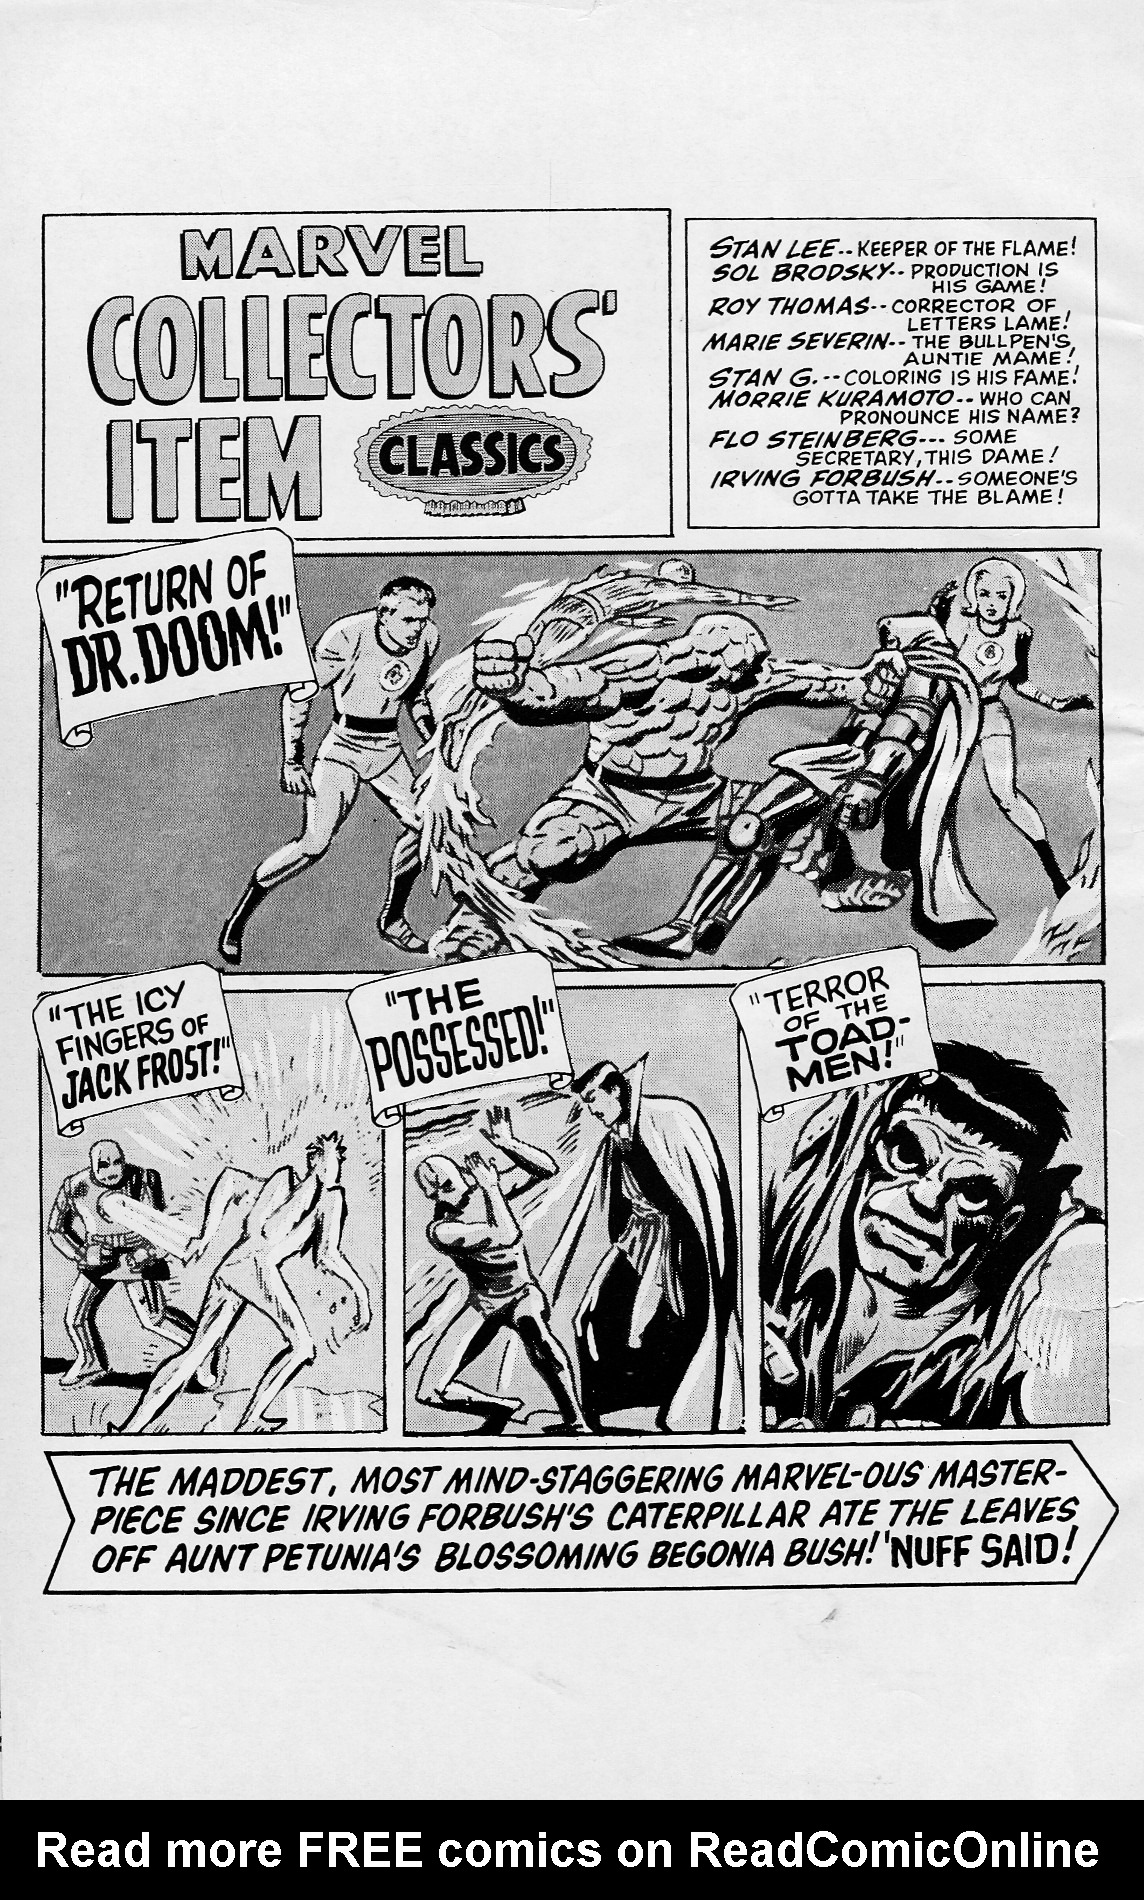 Read online Marvel Collectors' Item Classics comic -  Issue #8 - 2